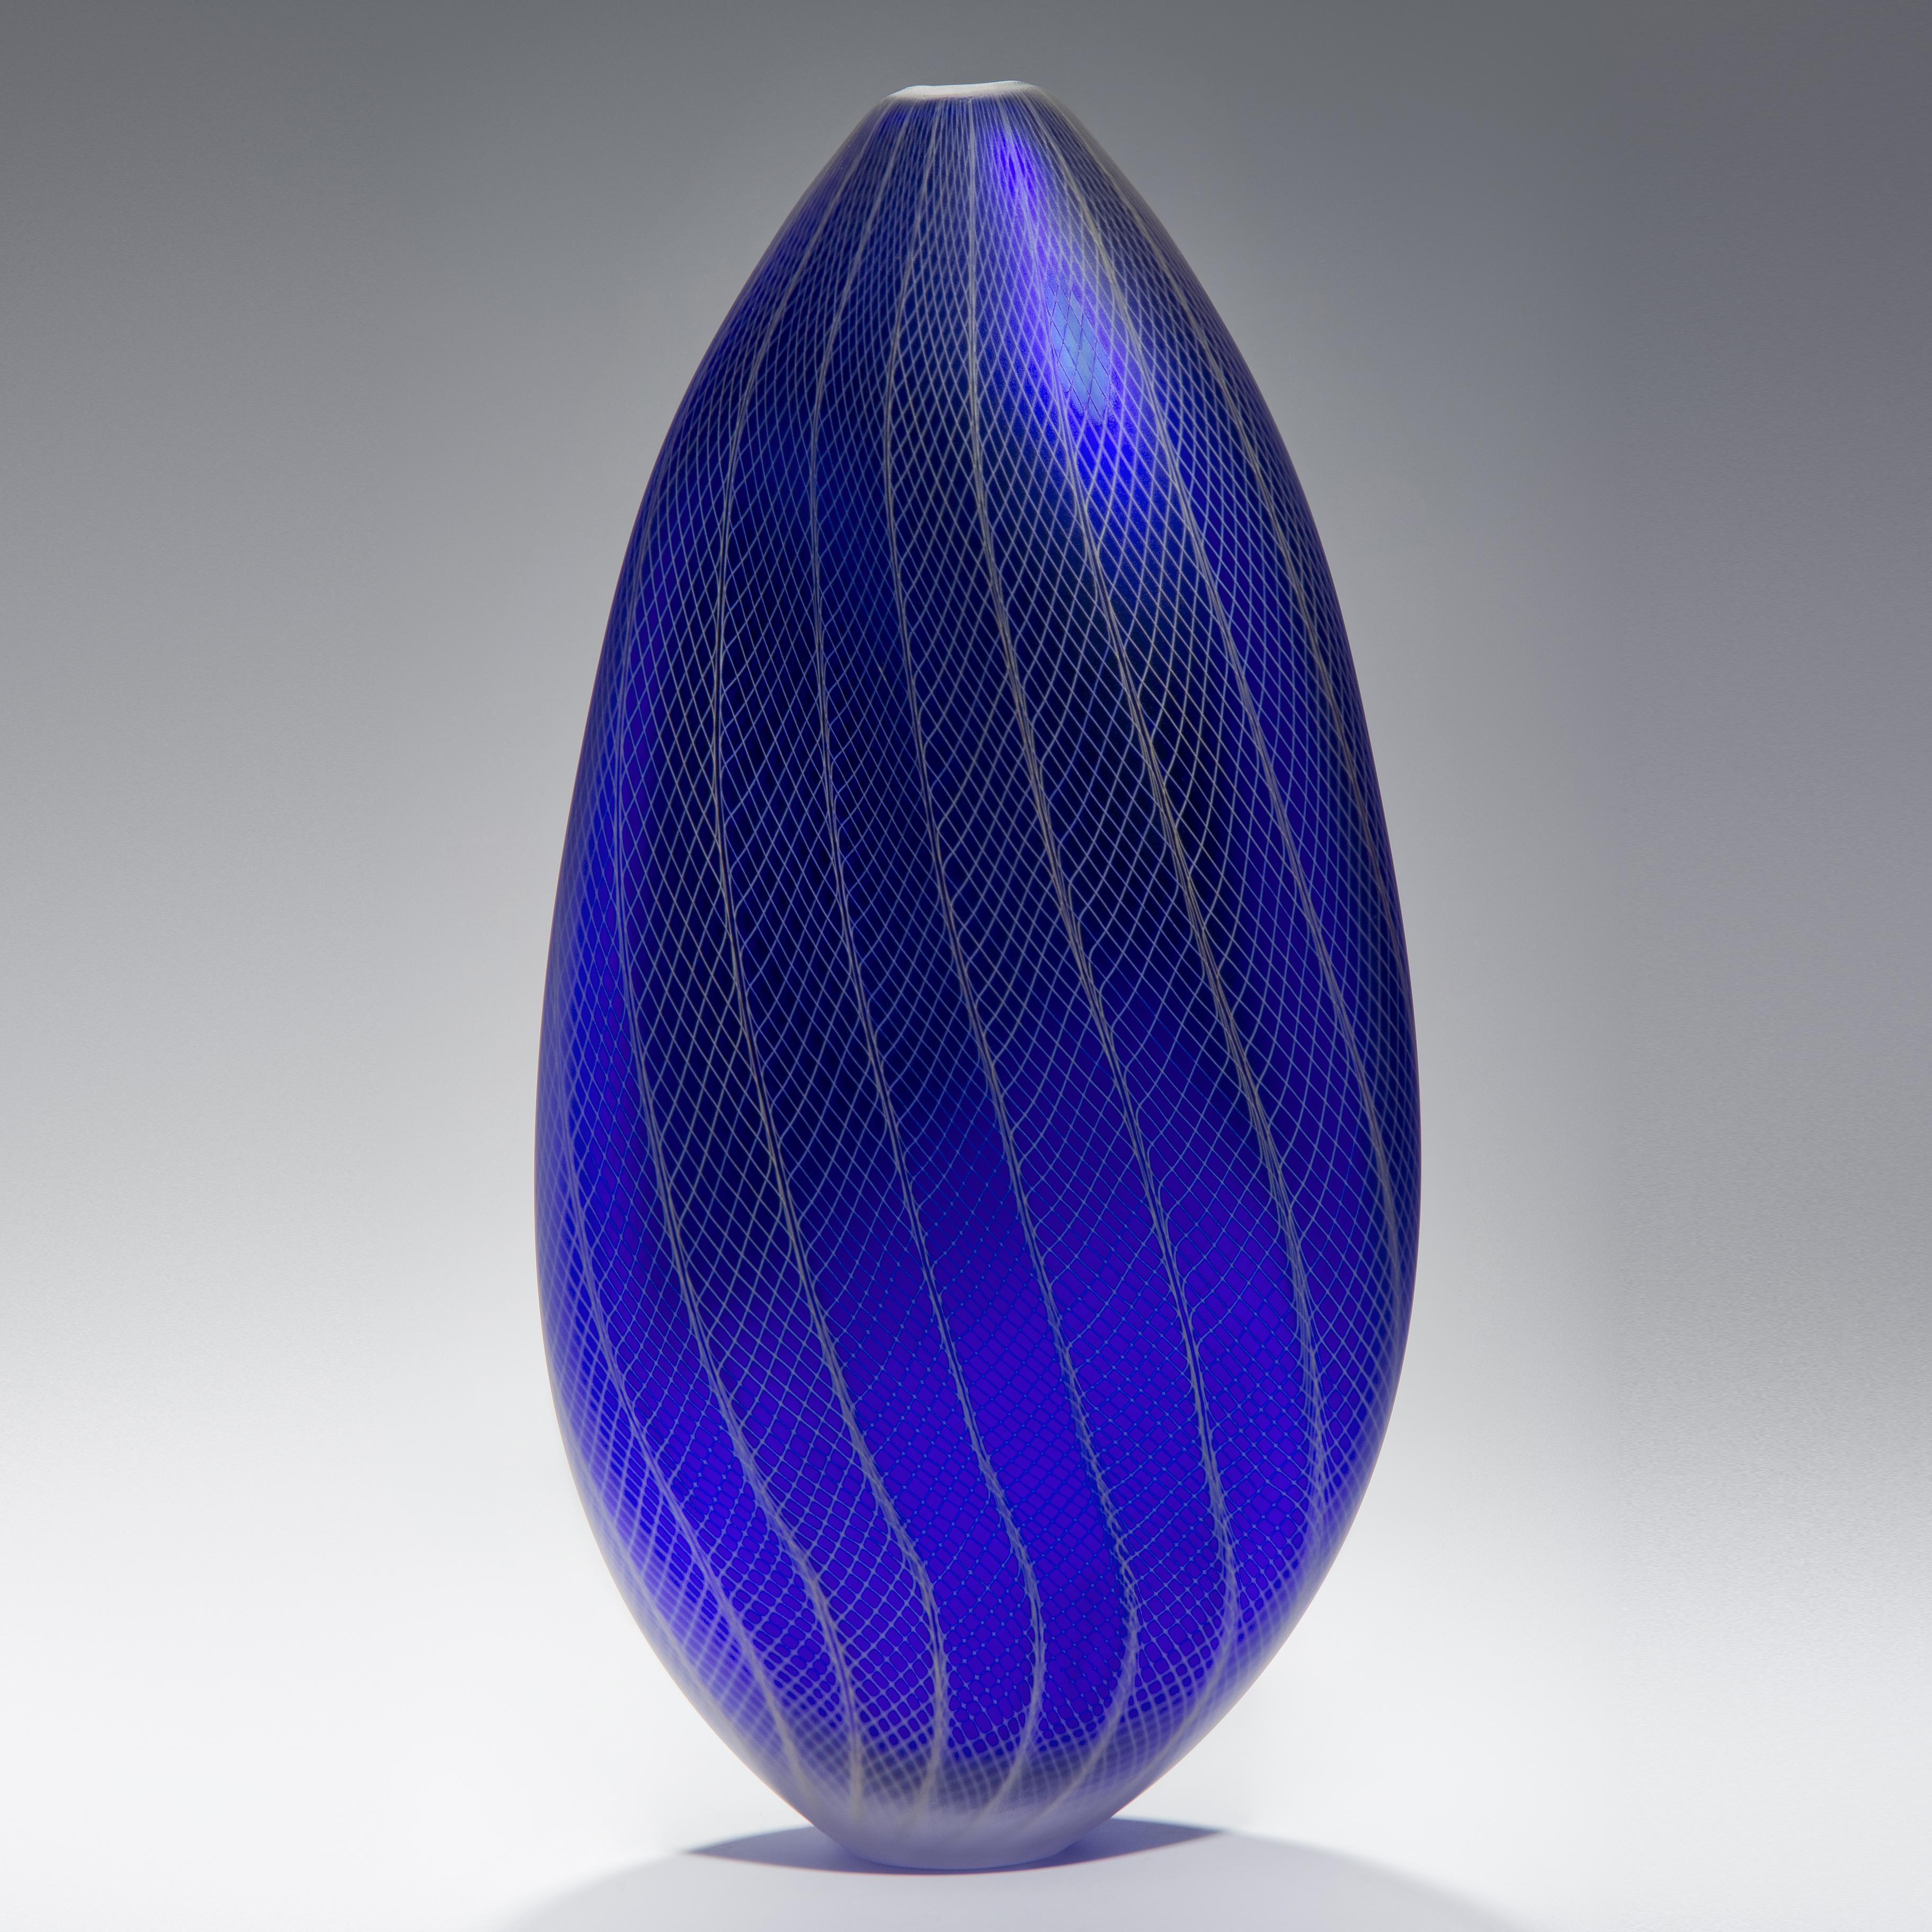 Stratiform Cobaltum 1.0.001 est un récipient unique en verre soufflé à la main avec de fins détails de canne filigranée, créé par l'artiste britannique Liam Reeves. Soufflé à la main en verre coloré bleu colbalt et blanc, l'intérieur a une finition